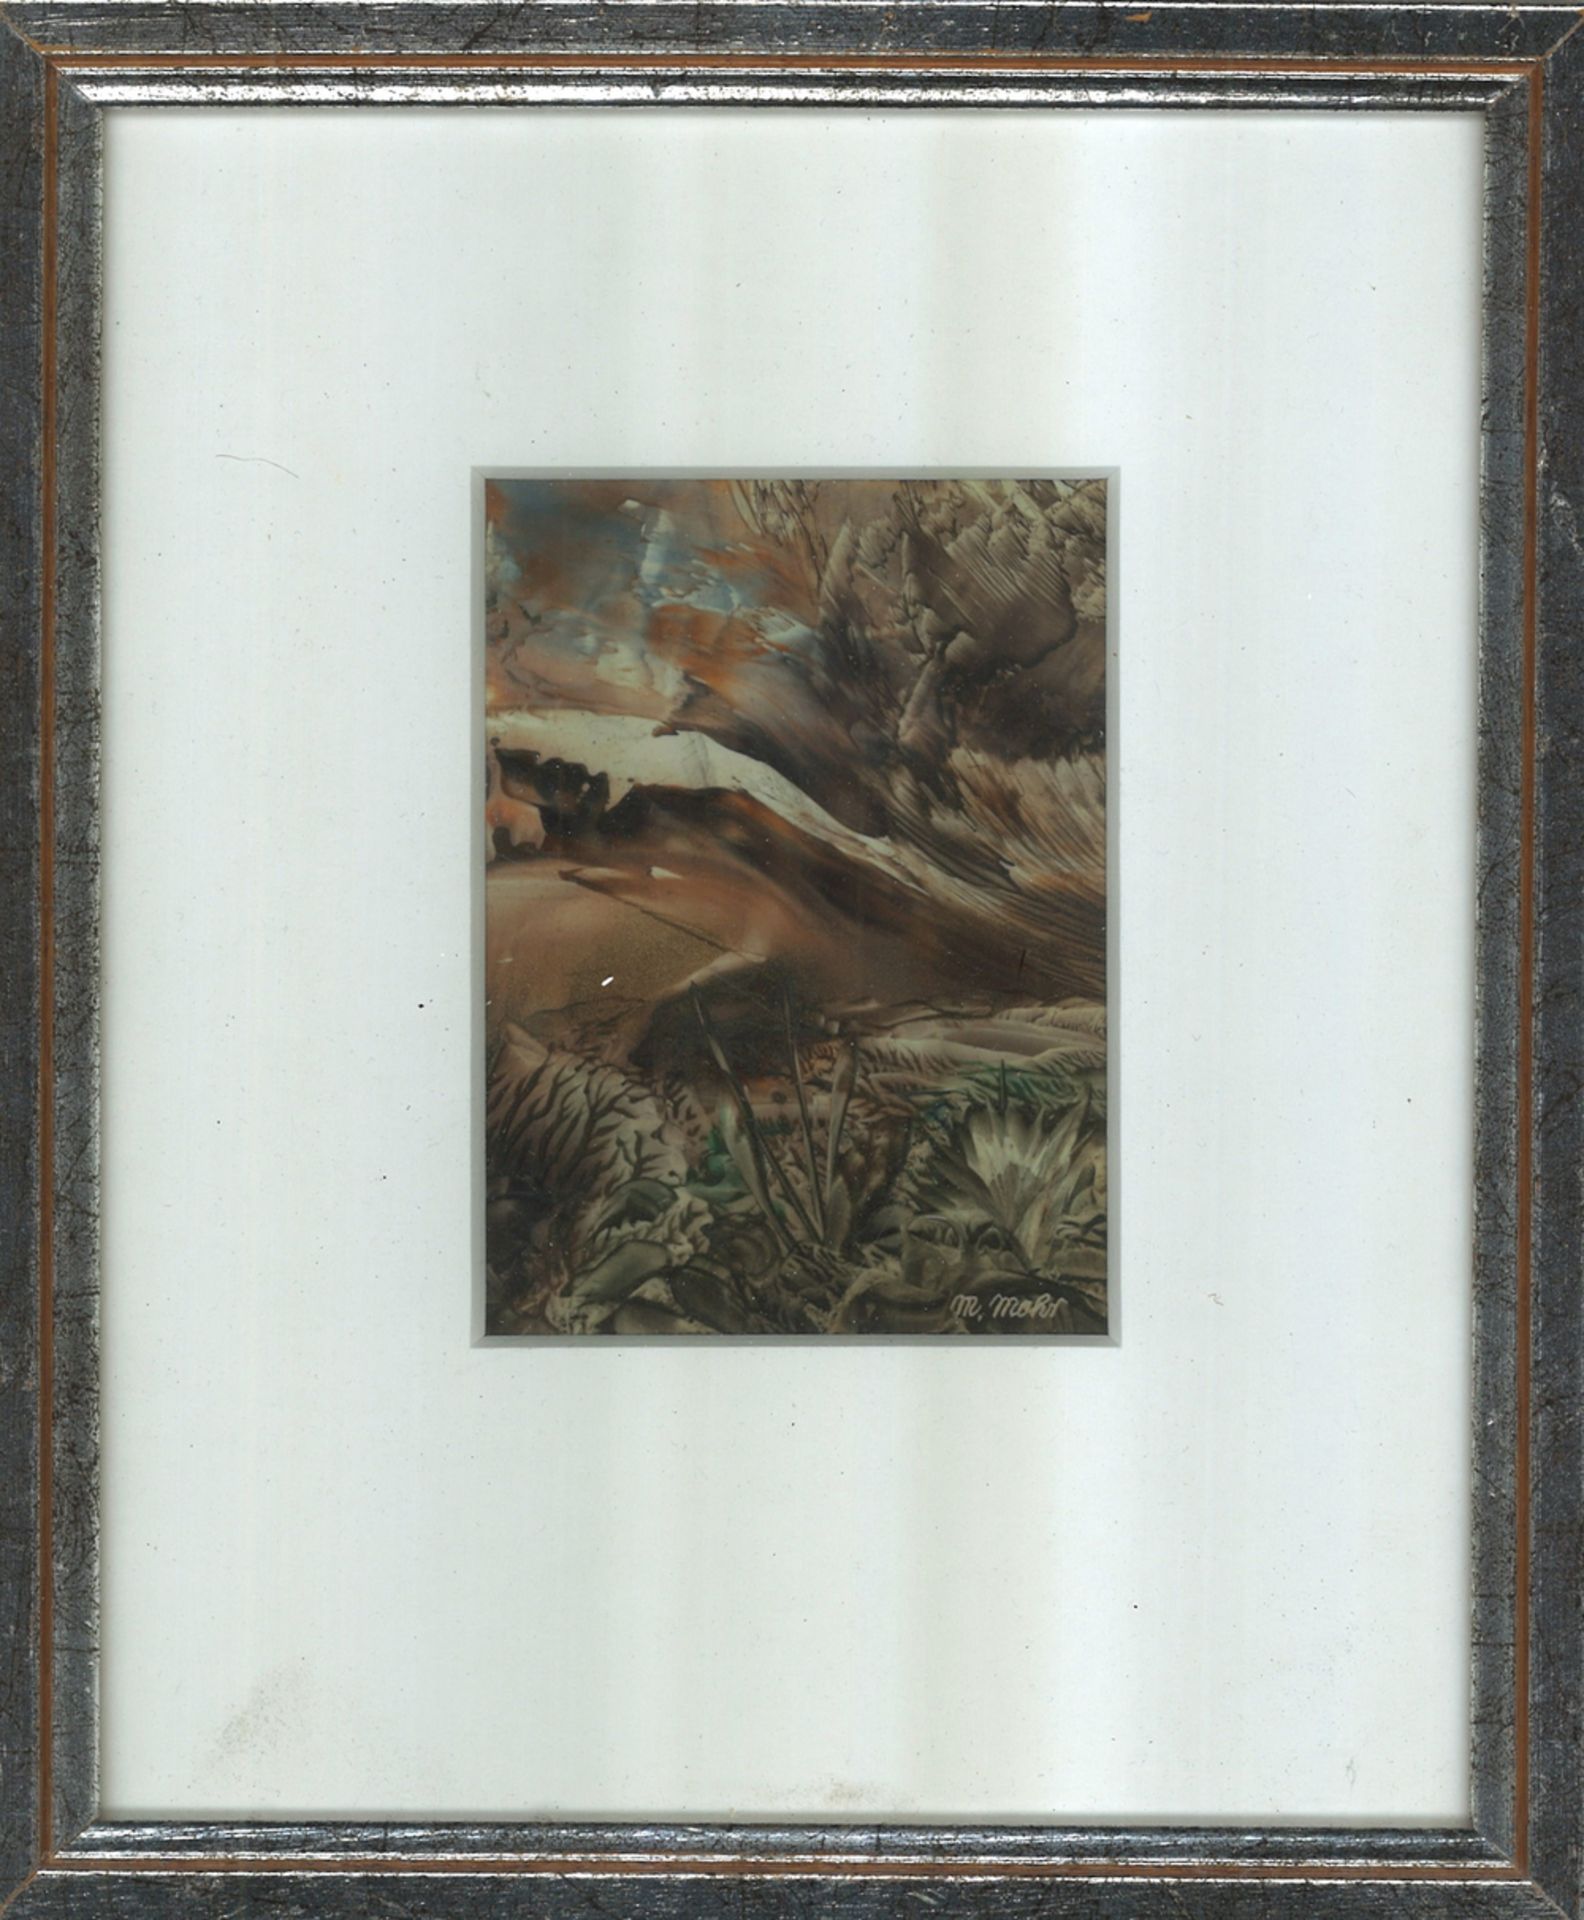 Druckgraphik "abstrakte Landschaft" rechts unten M. Mohr, hinter Glas gerahmt. Gesamtmaße: Höhe